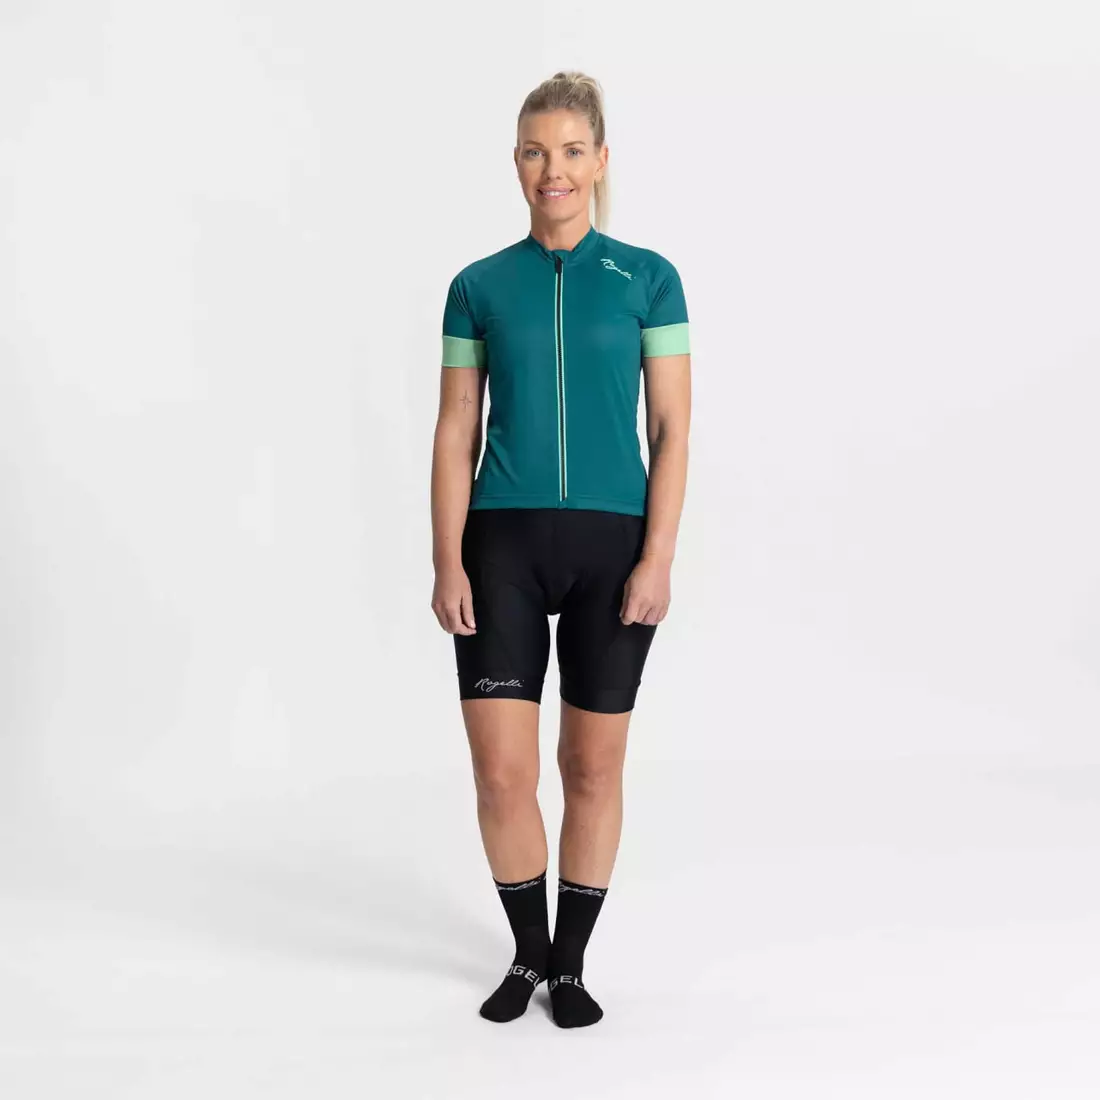 Rogelli MODESTA tricou de ciclism pentru femei, verde-turcoaz